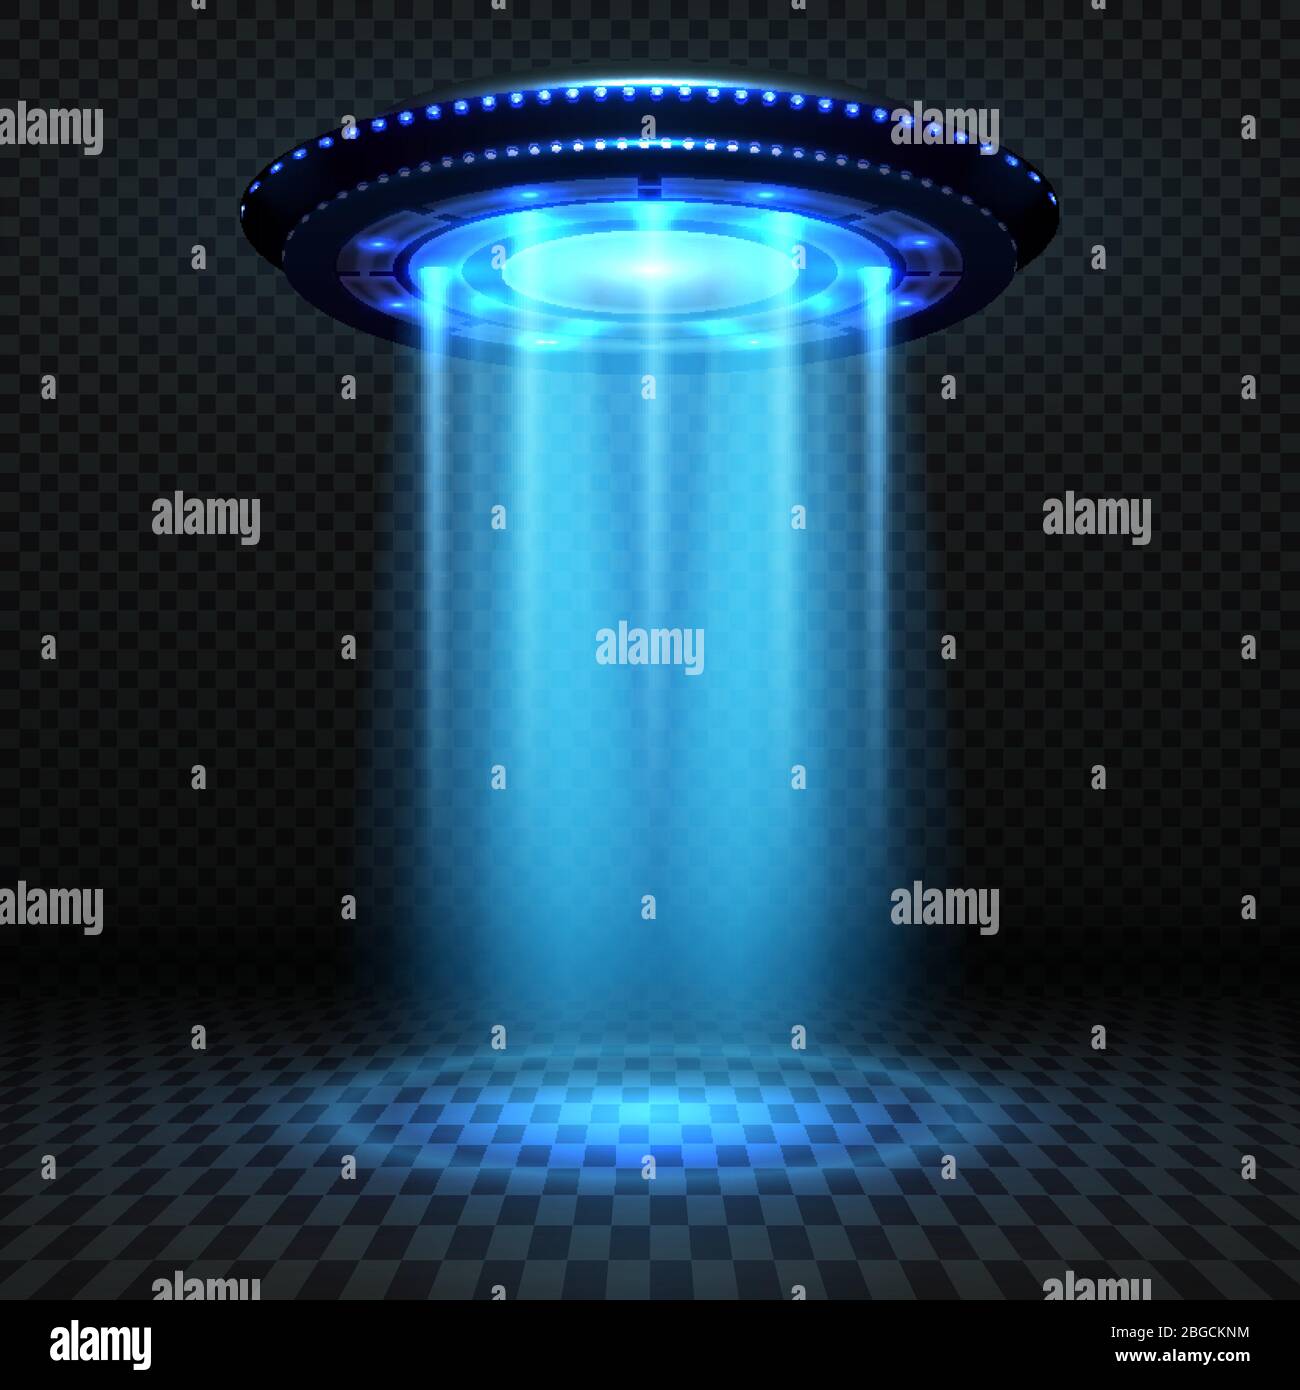 Aliens futuristisches Raumschiff, ufo mit blauen Lichtern. Invasion Vektor Konzept. UFO-Invasion, Raumschiff und Blue Ray Illustration Stock Vektor